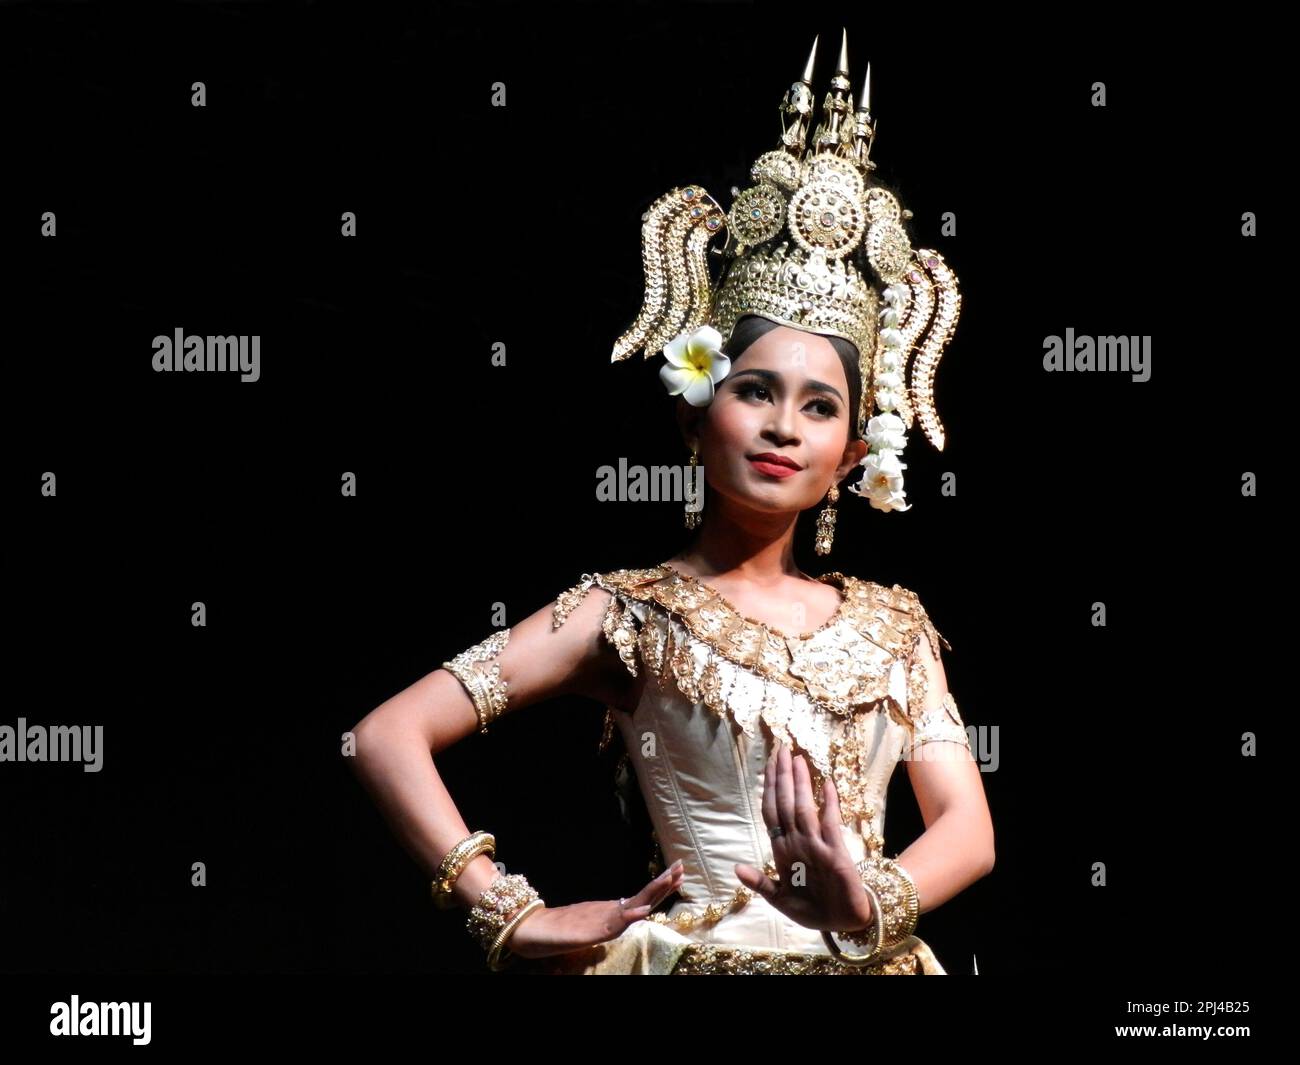 Kambodscha, Phnom Penh: Traditionelle Tanzvorstellung im Nationalmuseum, einschließlich einer Vielzahl klassischer und folkloristischer Tänze. Stockfoto